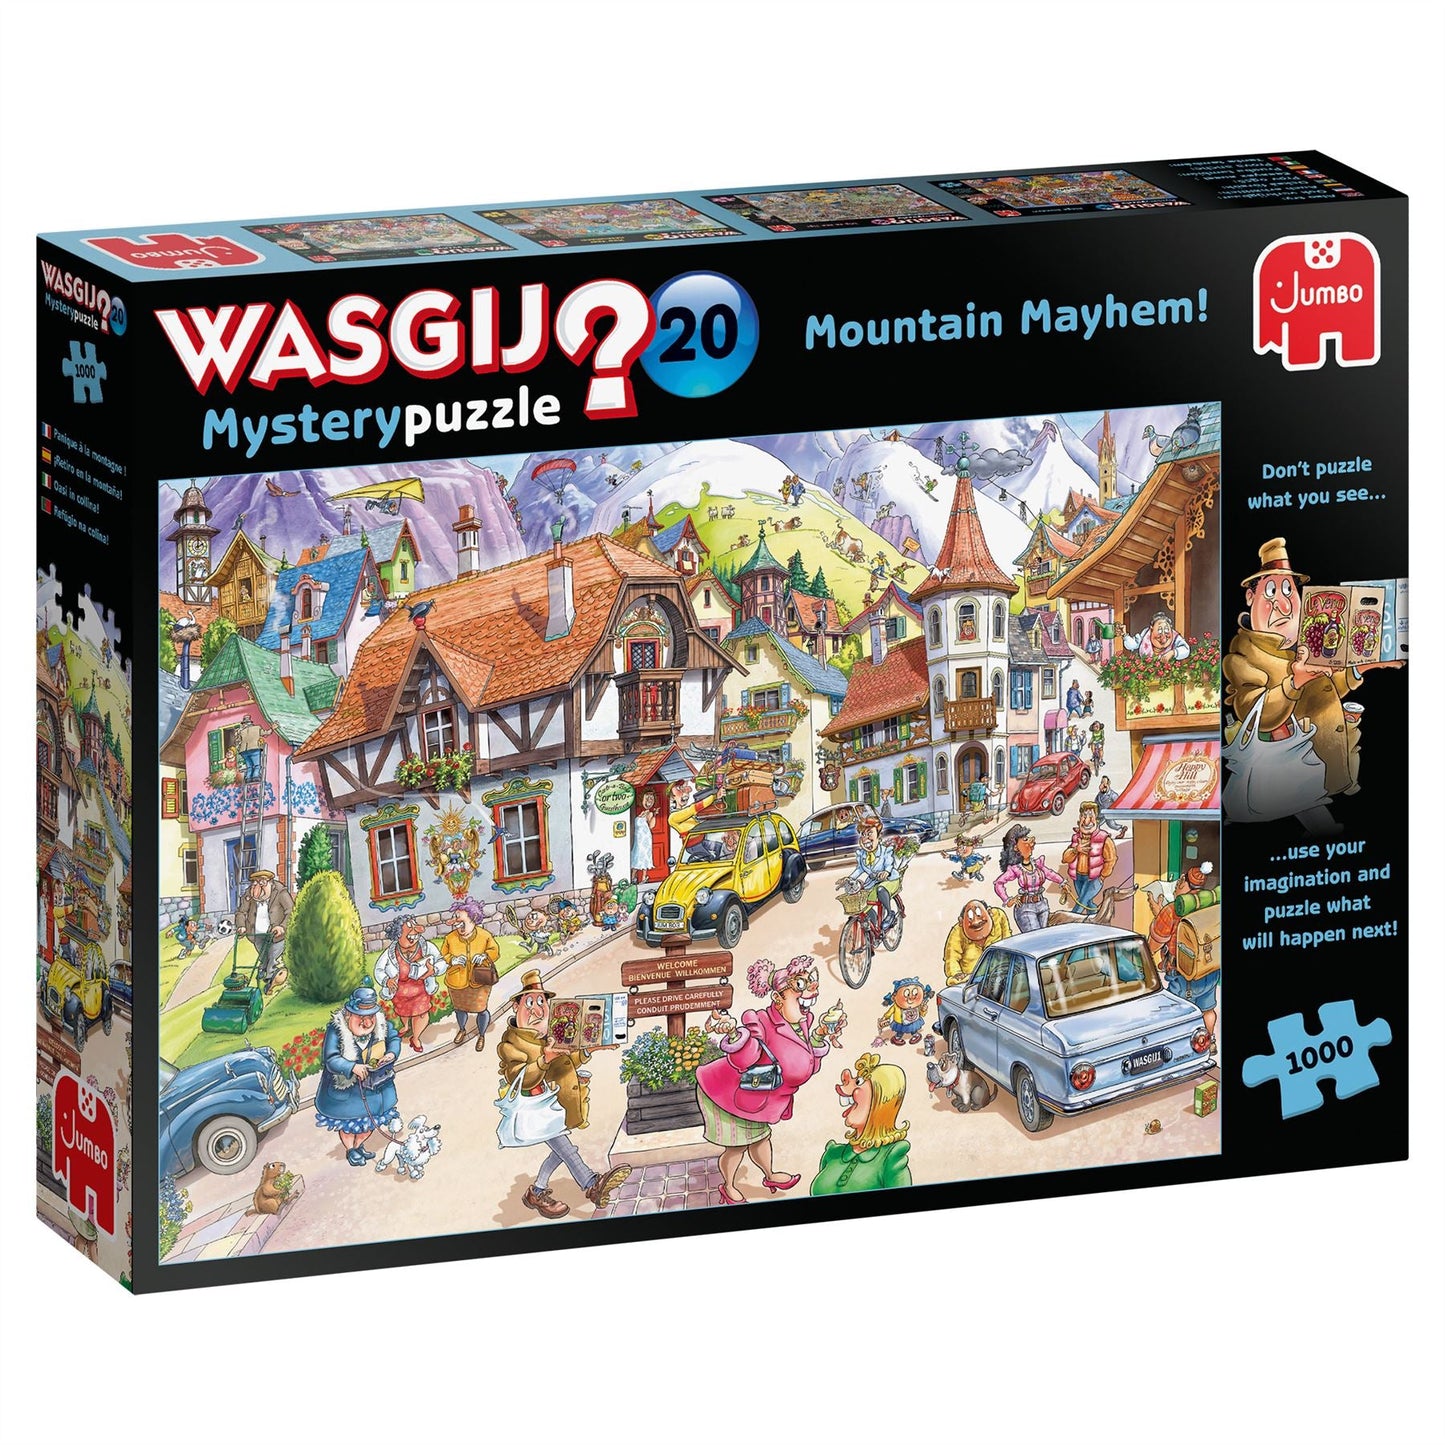 Wasgij Mystery 20 Mountain Mayhem! 1000 Piece Jigsaw Puzzle 2